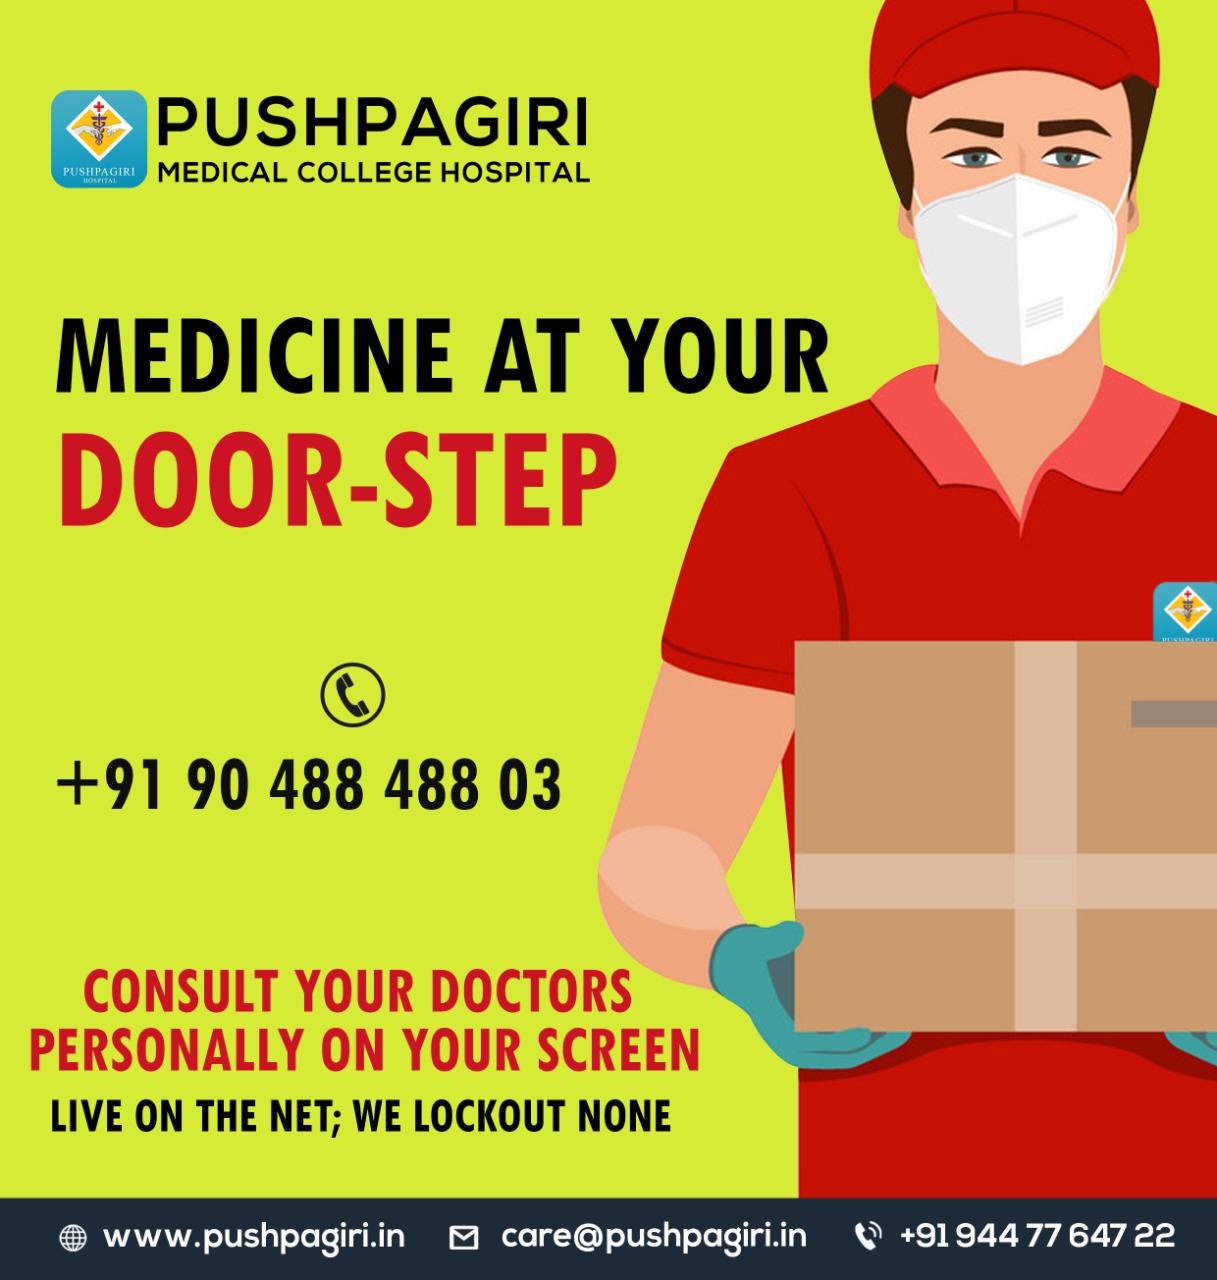 Pushpagiri Hospital - Delivering Medicine at your door-steps